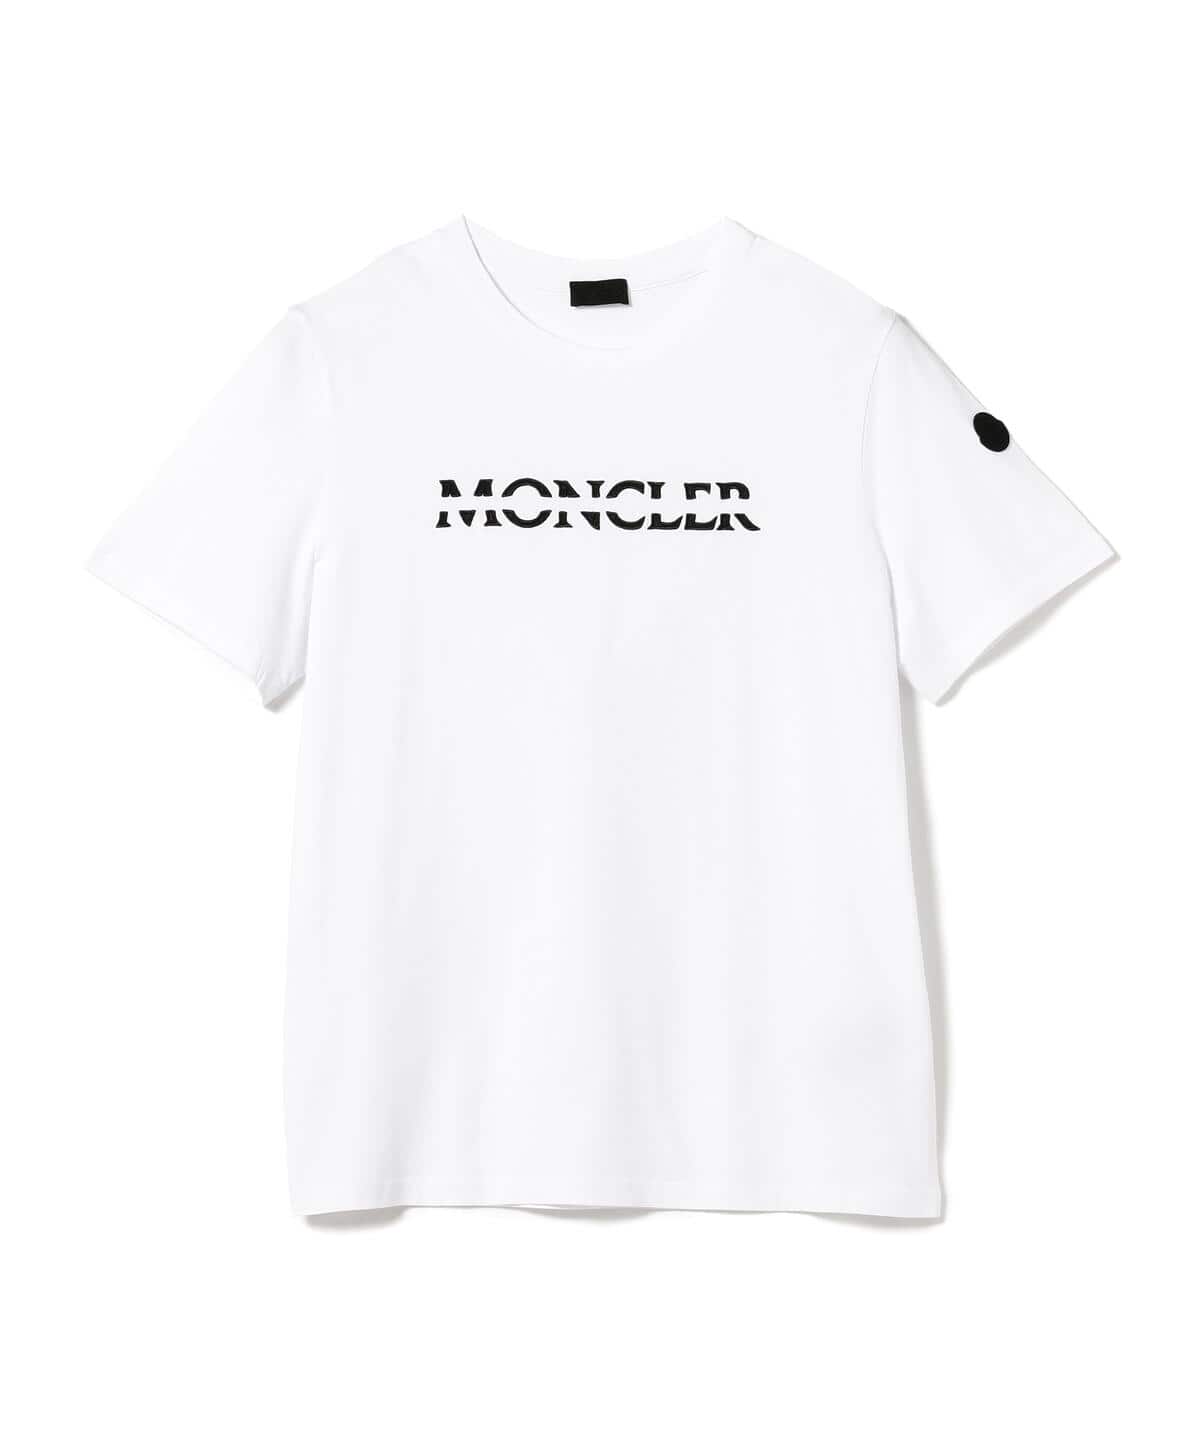 MONCLER / ロゴ クルーネック Tシャツ - BEAMS F